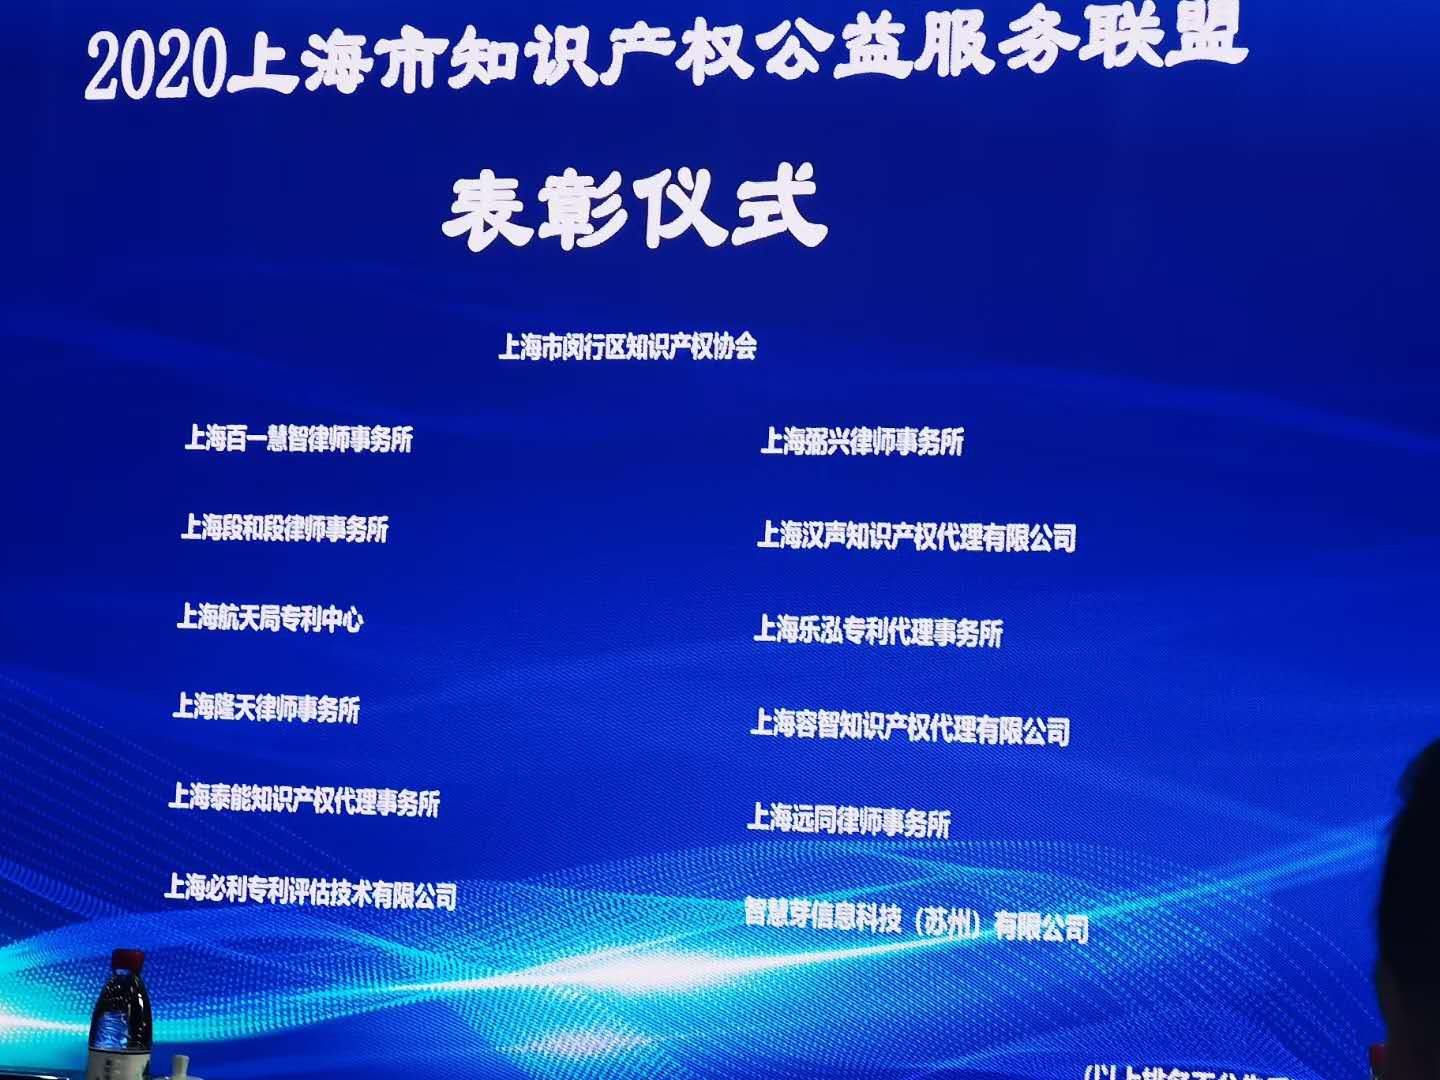 我所获得2020上海市知识产权公益服务联盟表彰